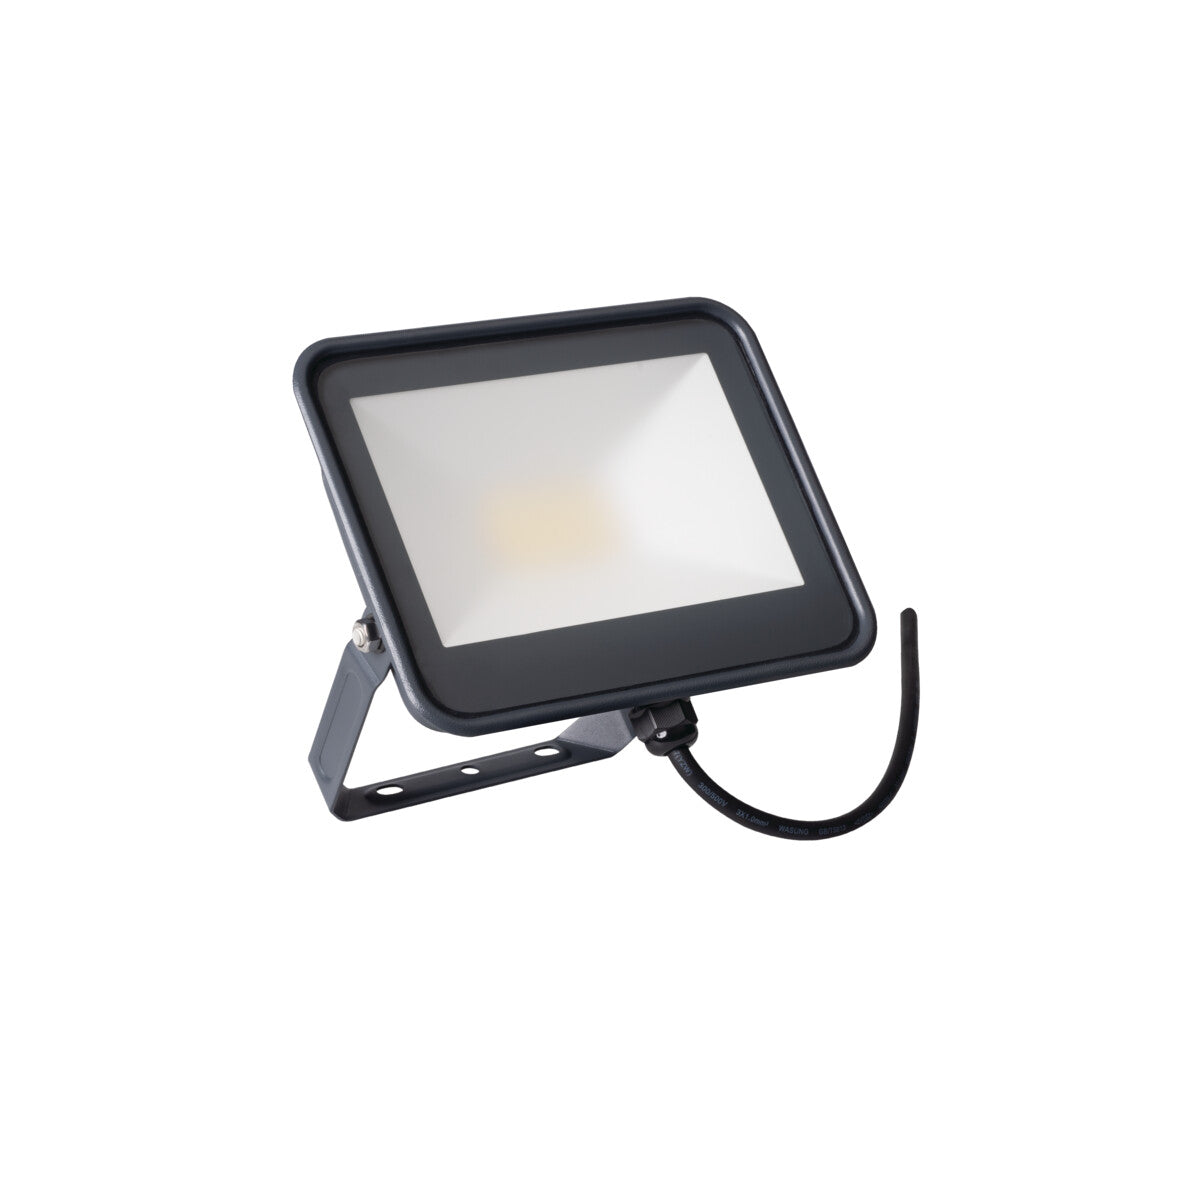 Kanlux IQ-LED FL IP65 LED Floodlight Waterproof Outdoor Neutral White Light 4000K